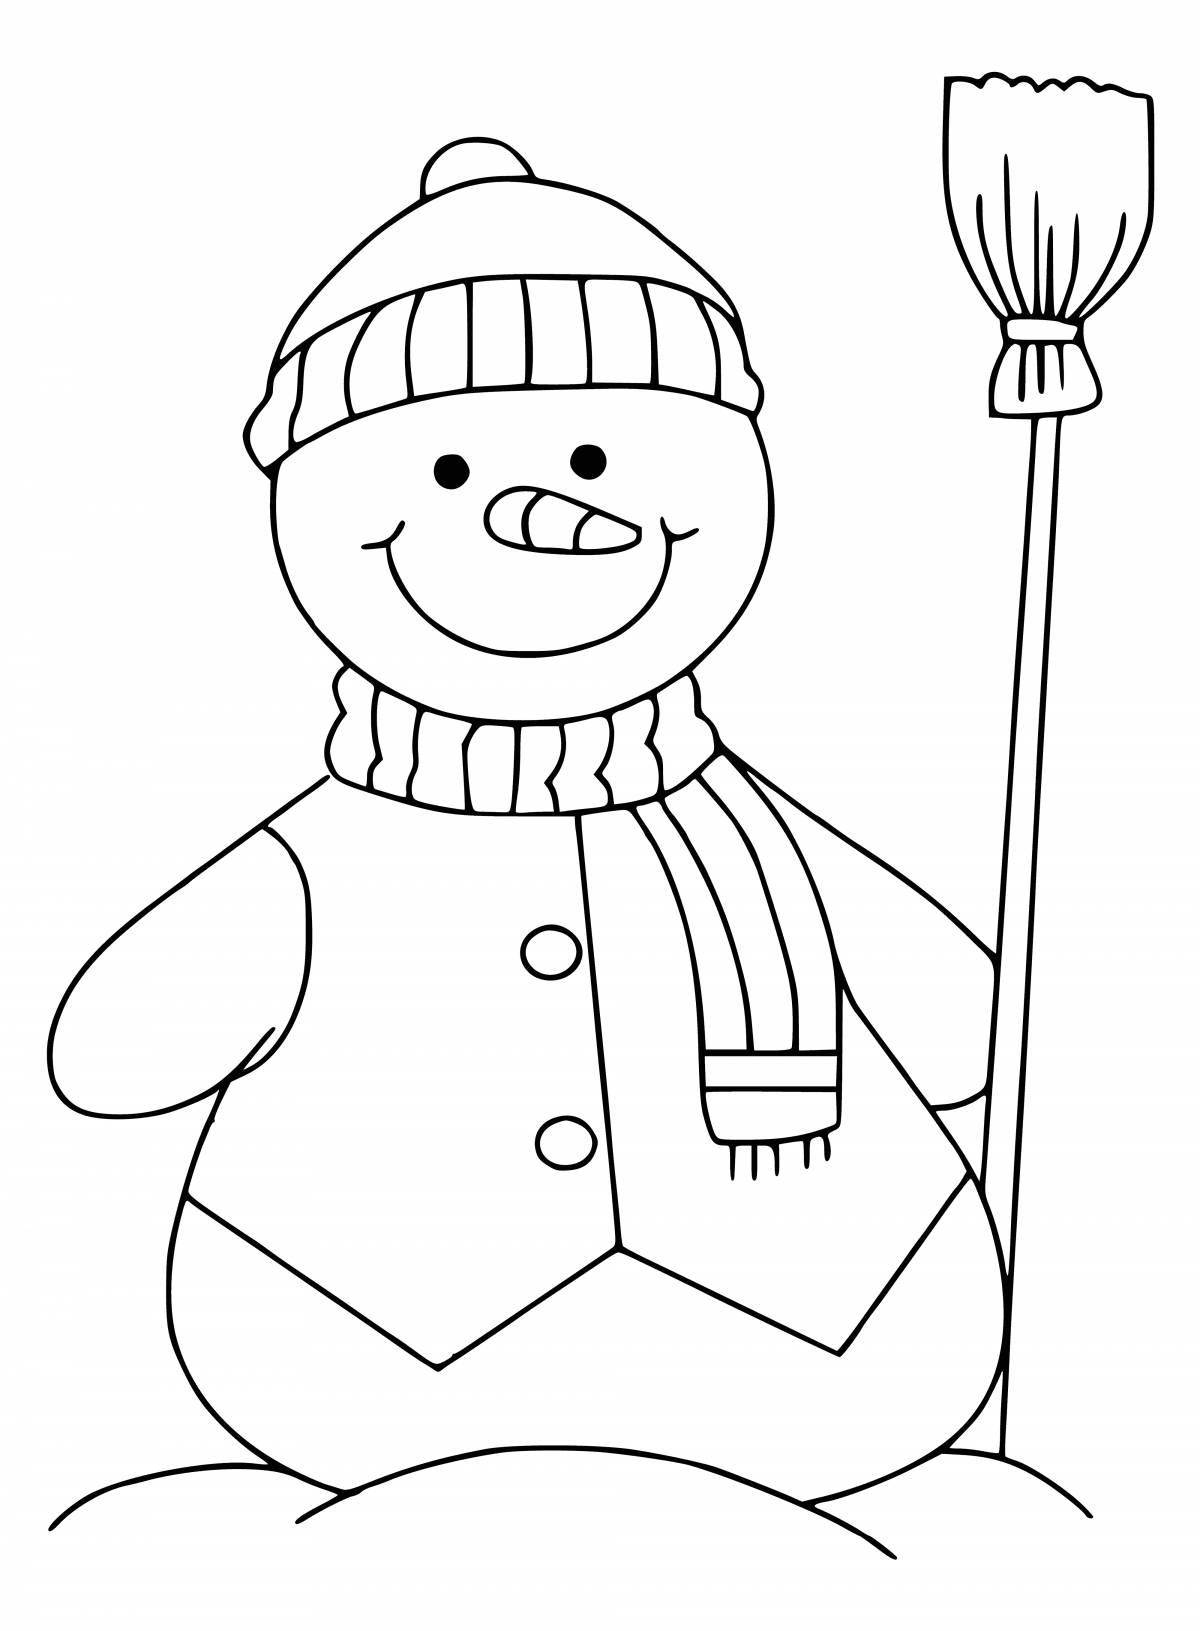 Радостная раскраска снеговик для детей